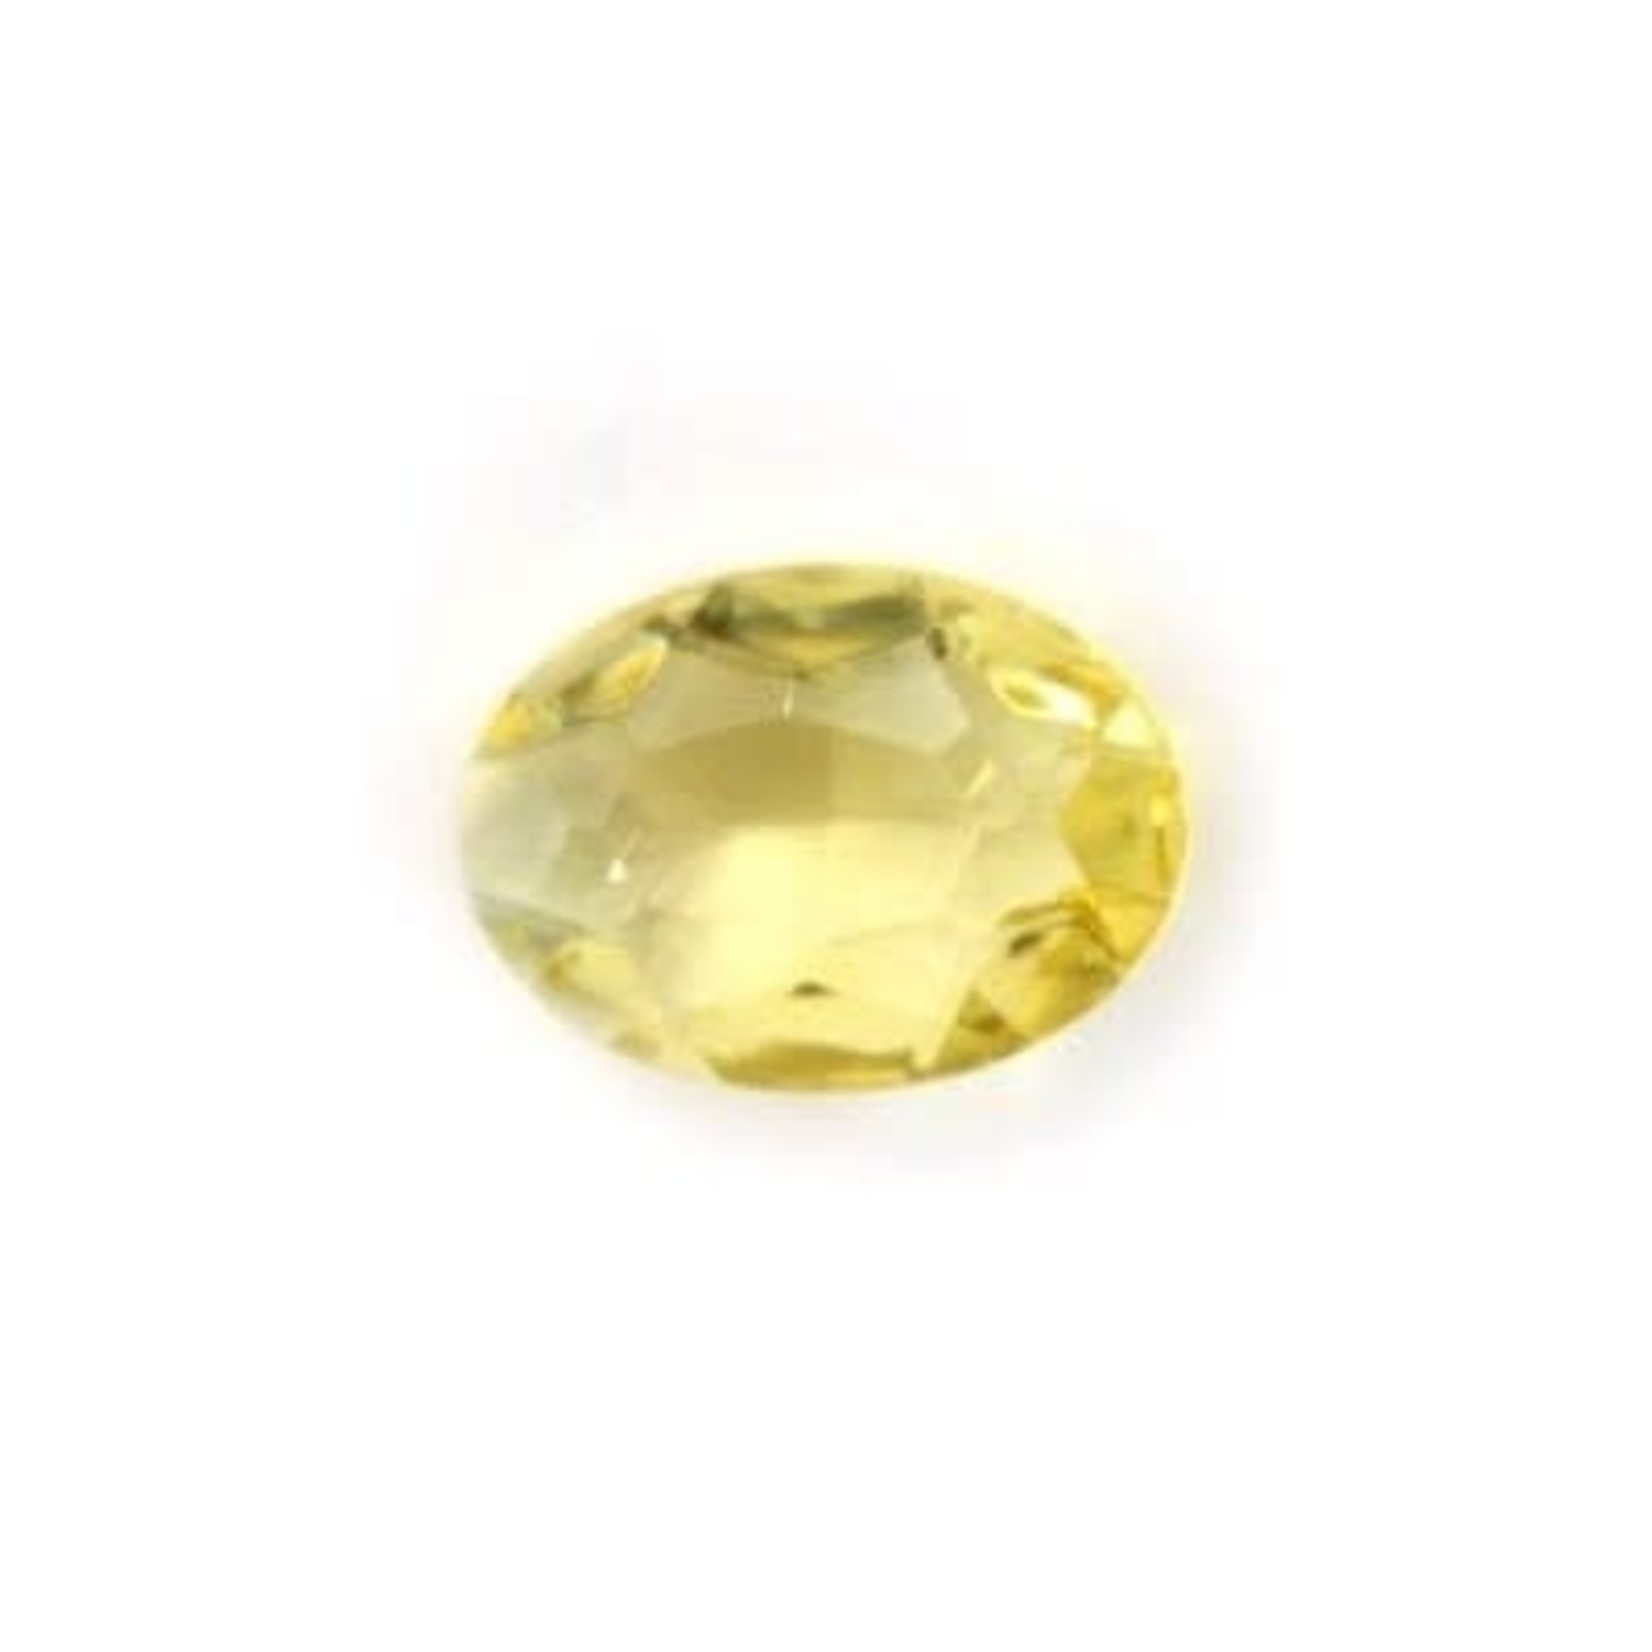 25 Czech Glass 12x9mm Milky Jonquil Light Yellow Oval Beads